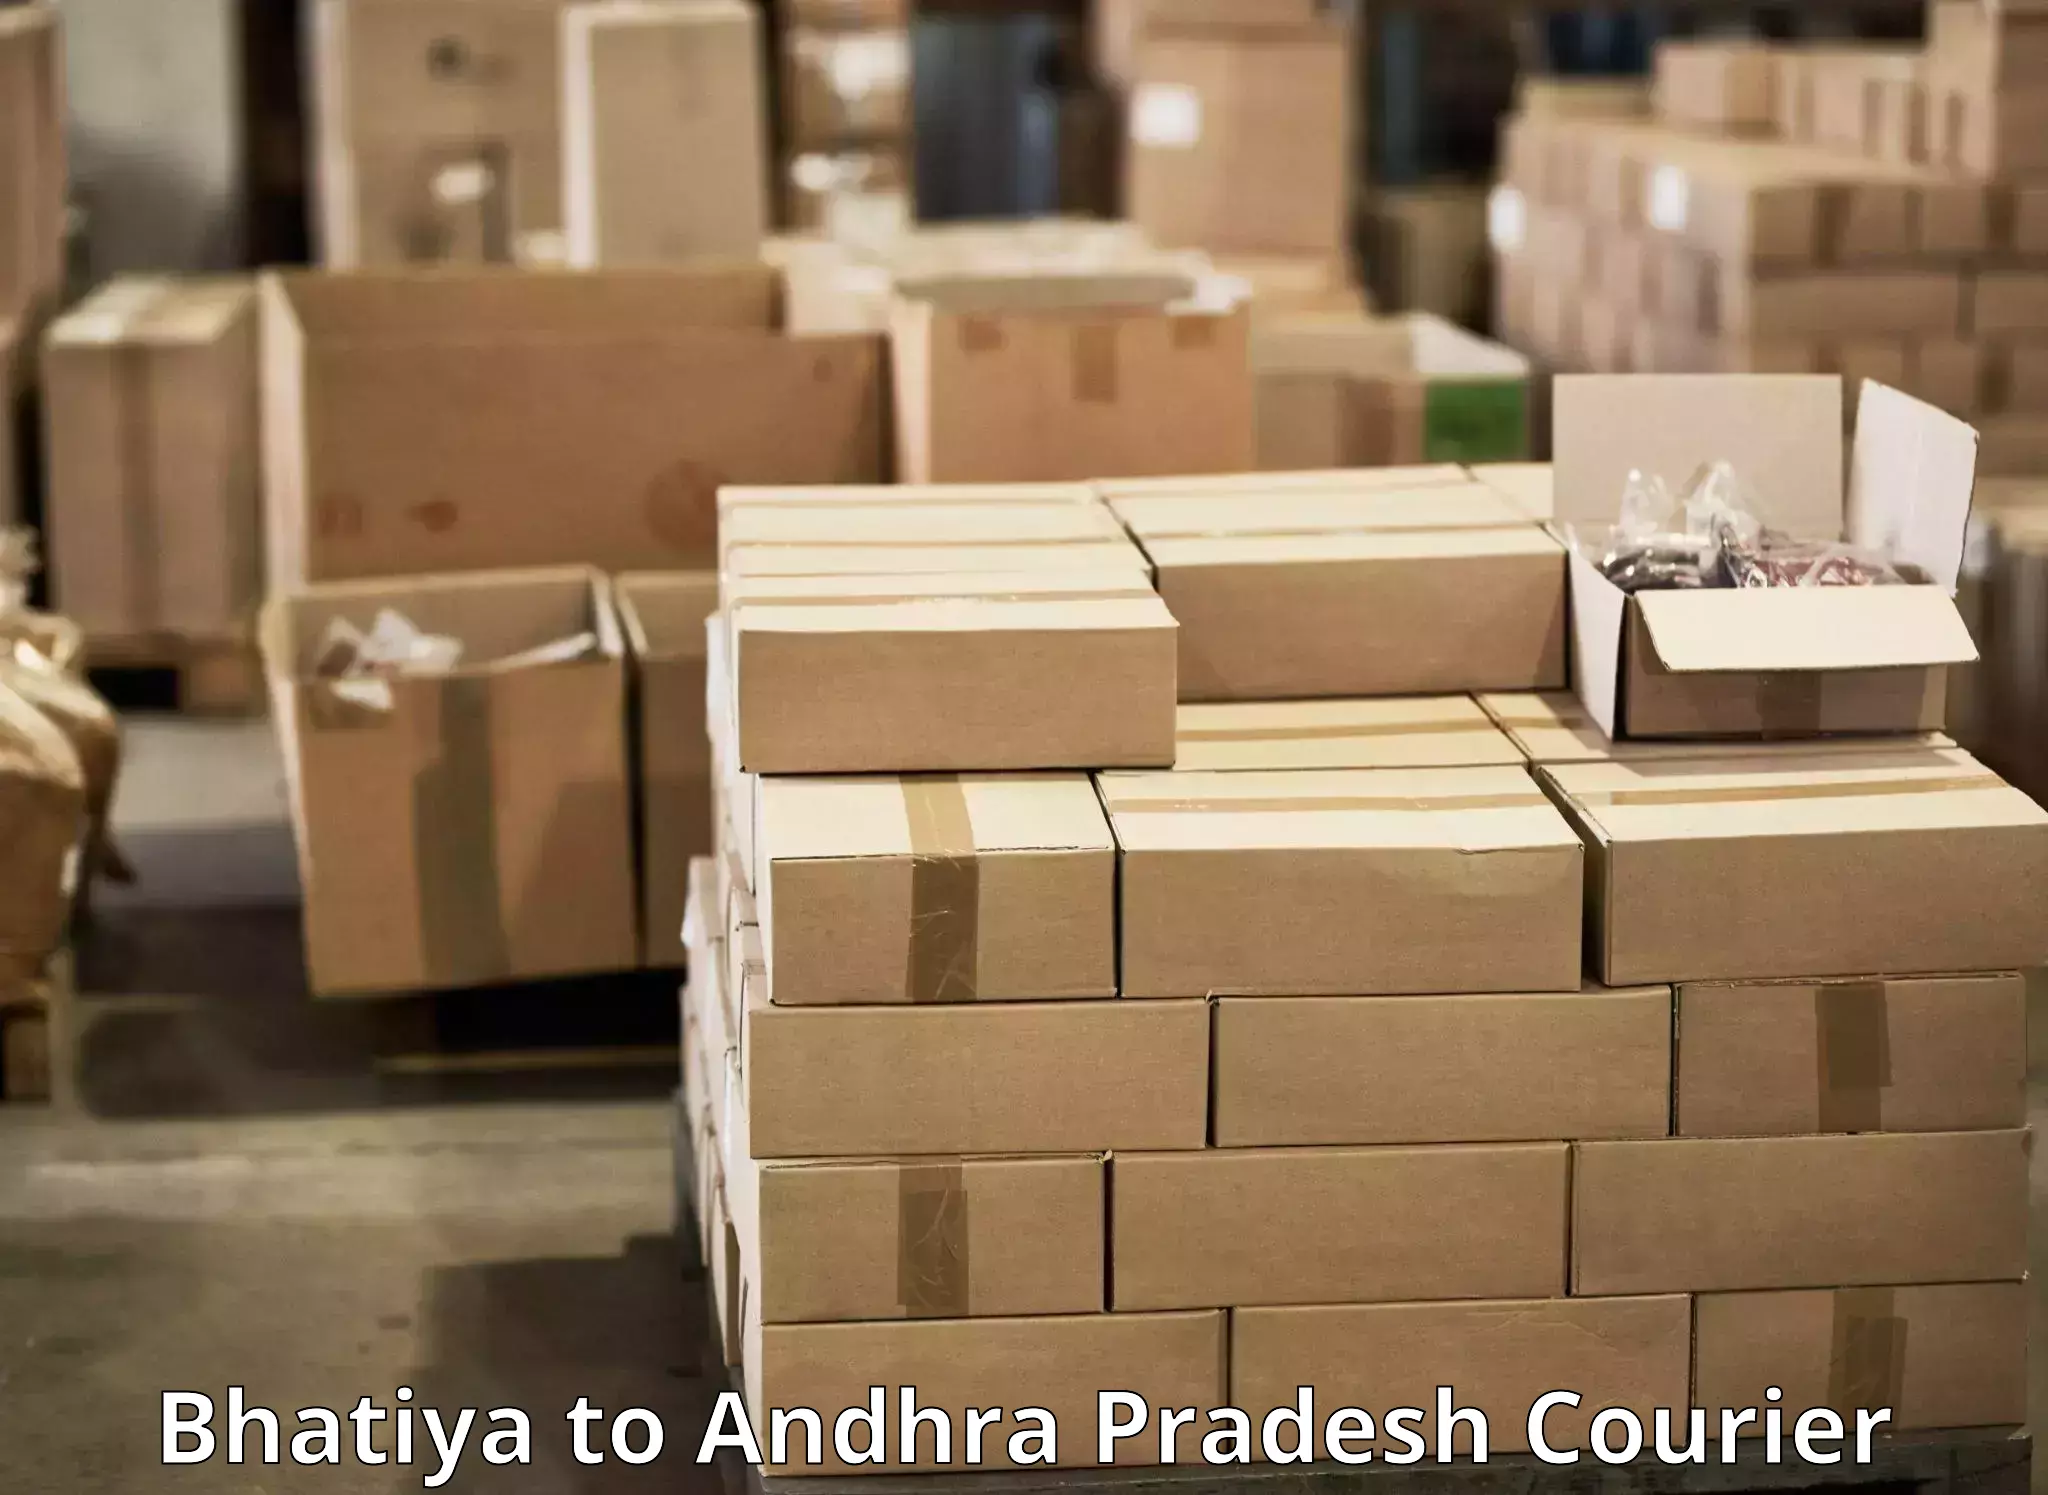 Premium courier services Bhatiya to Inkollu